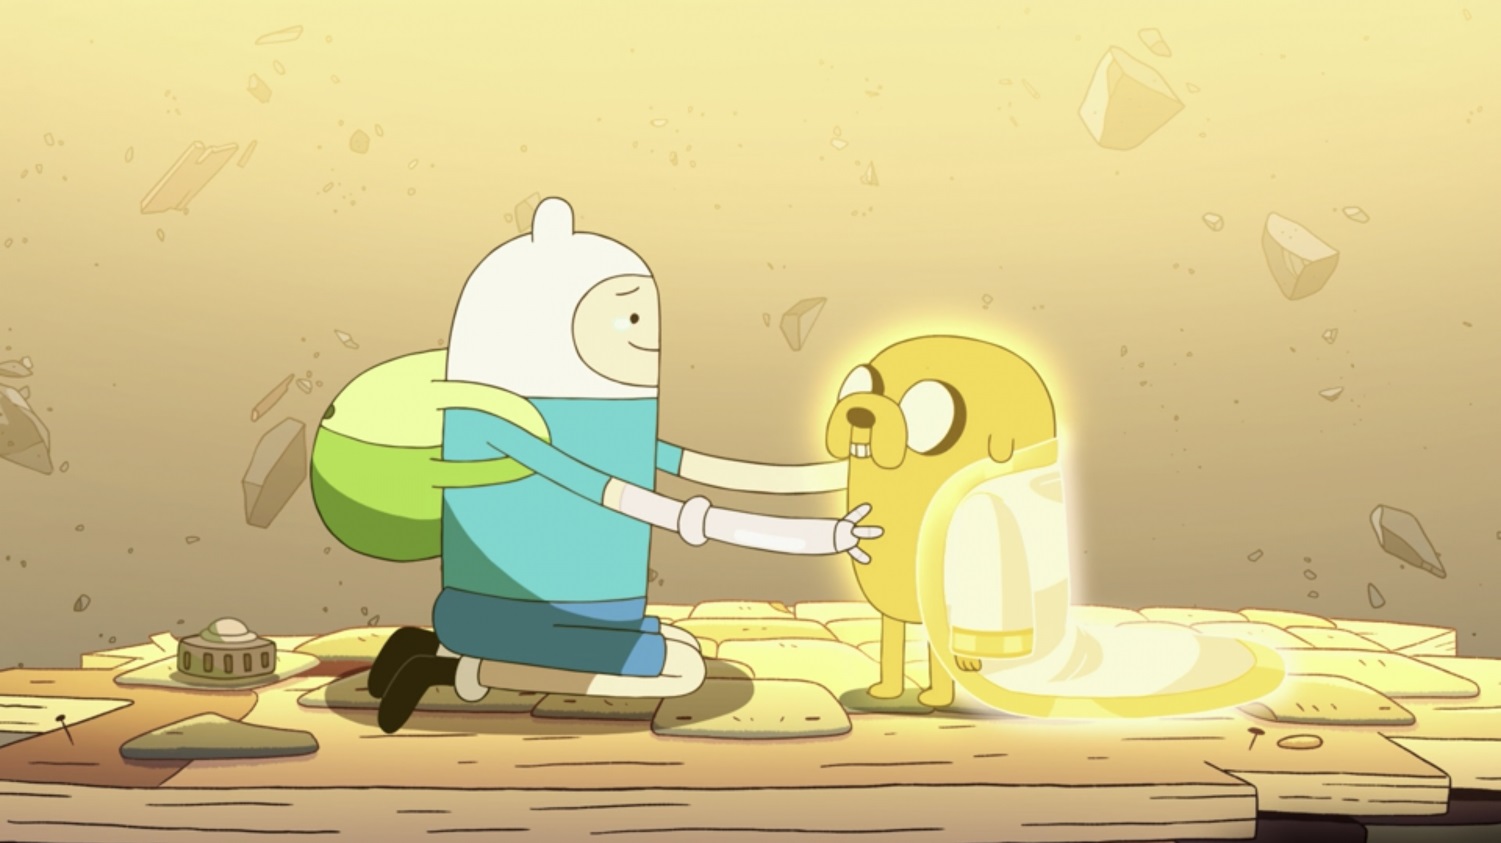 Cena da minissérie Adventure Time: Distant Lands. A imagem mostra as personagens Finn e Jake. O fundo é dourado e pode-se ver pedras flutuando. Eles estão em cima de um pedaço de chão que também está flutuando. Eles estão de lado. Finn é um menino branco que veste um chapéu branco com orelhinhas, uma camiseta azul, um shorts azul, sapato preto e mochila verde. Jake é um cachorro amarelo. Ele usa um casaco dourado. Finn está com as mãos nos ombros de Jake.